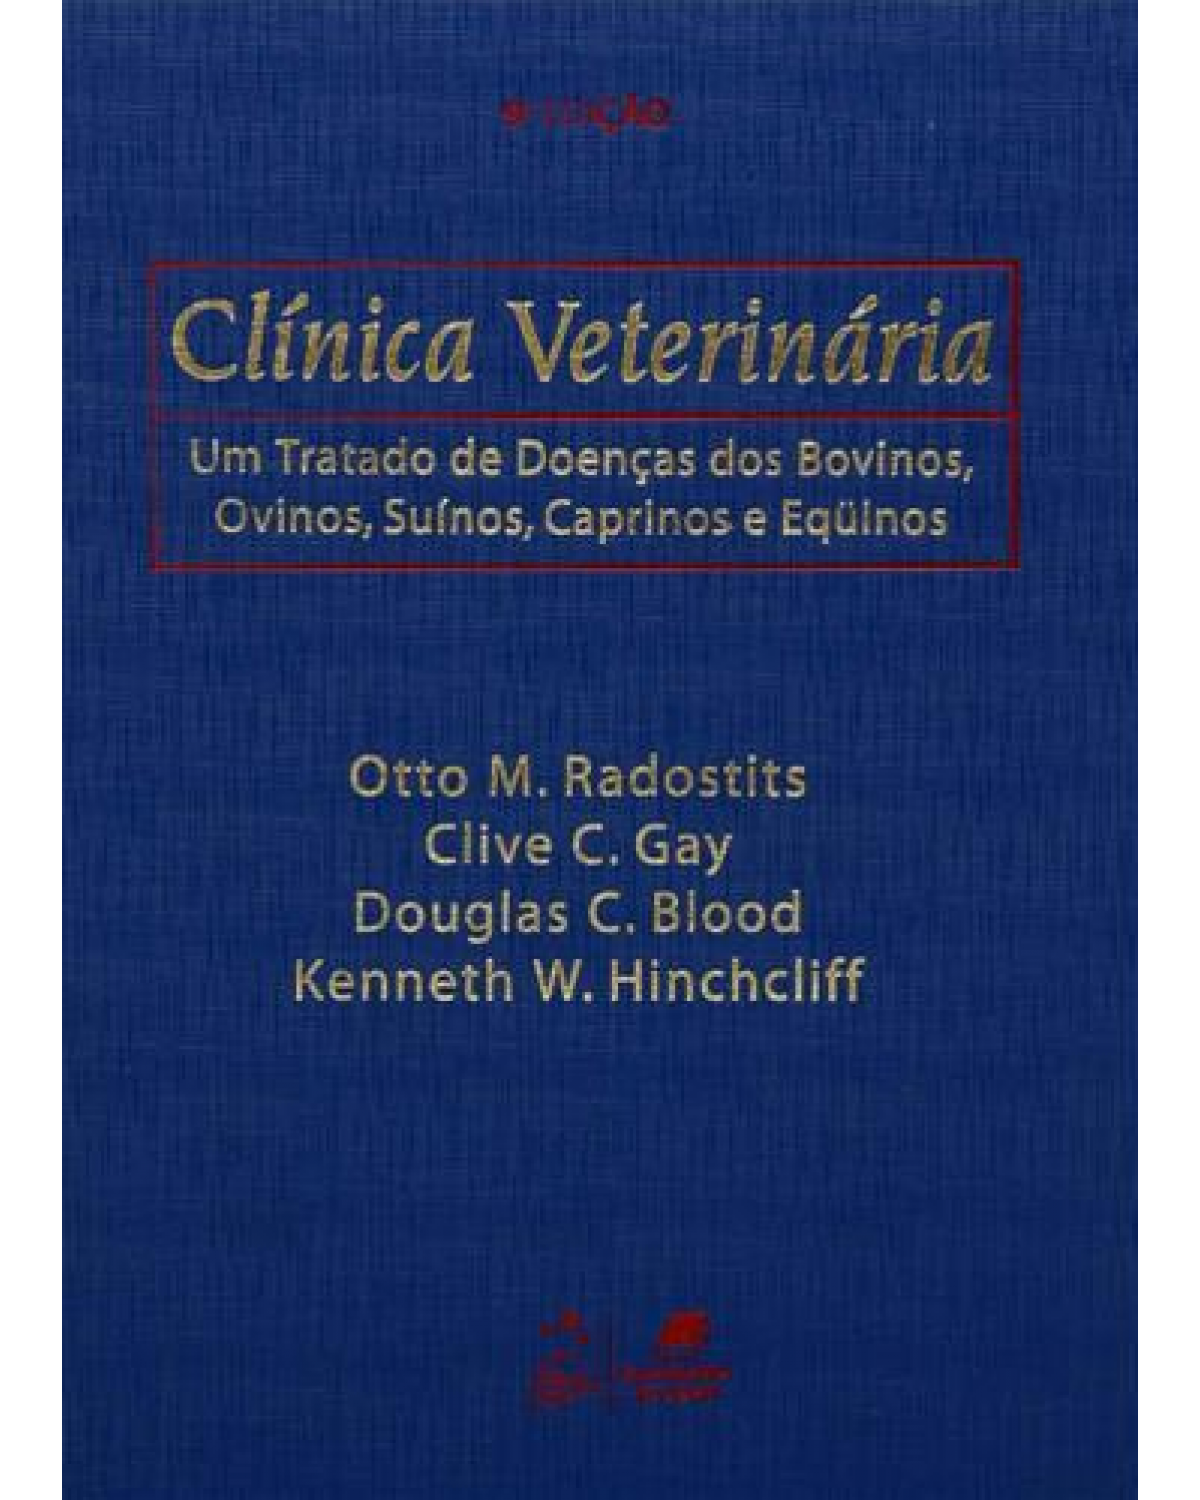 Clínica veterinária - Um tratado de doenças dos bovinos, ovinos, suínos, caprinos e eqüinos - 9ª Edição | 2002